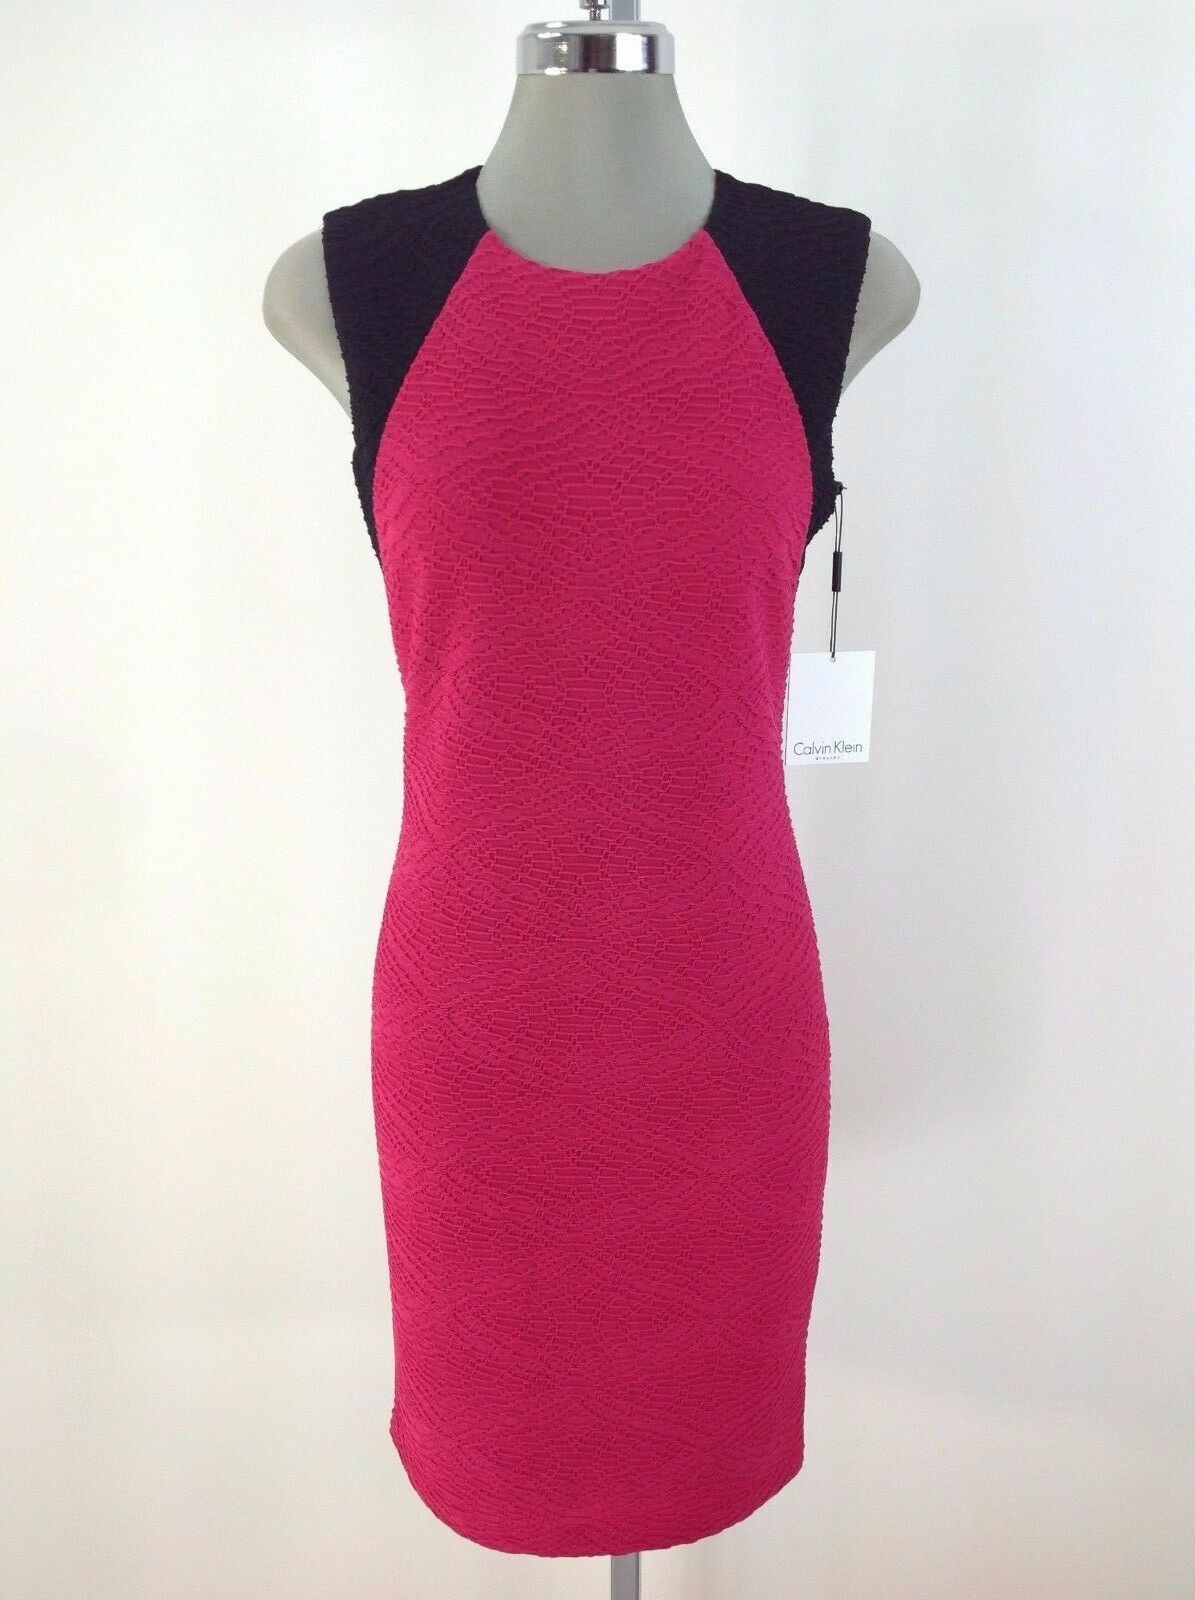 Платье в рубчик с акцентом на плечах Calvin Klein NEW FLAMINGO/BLACK, размеры 6,8,10